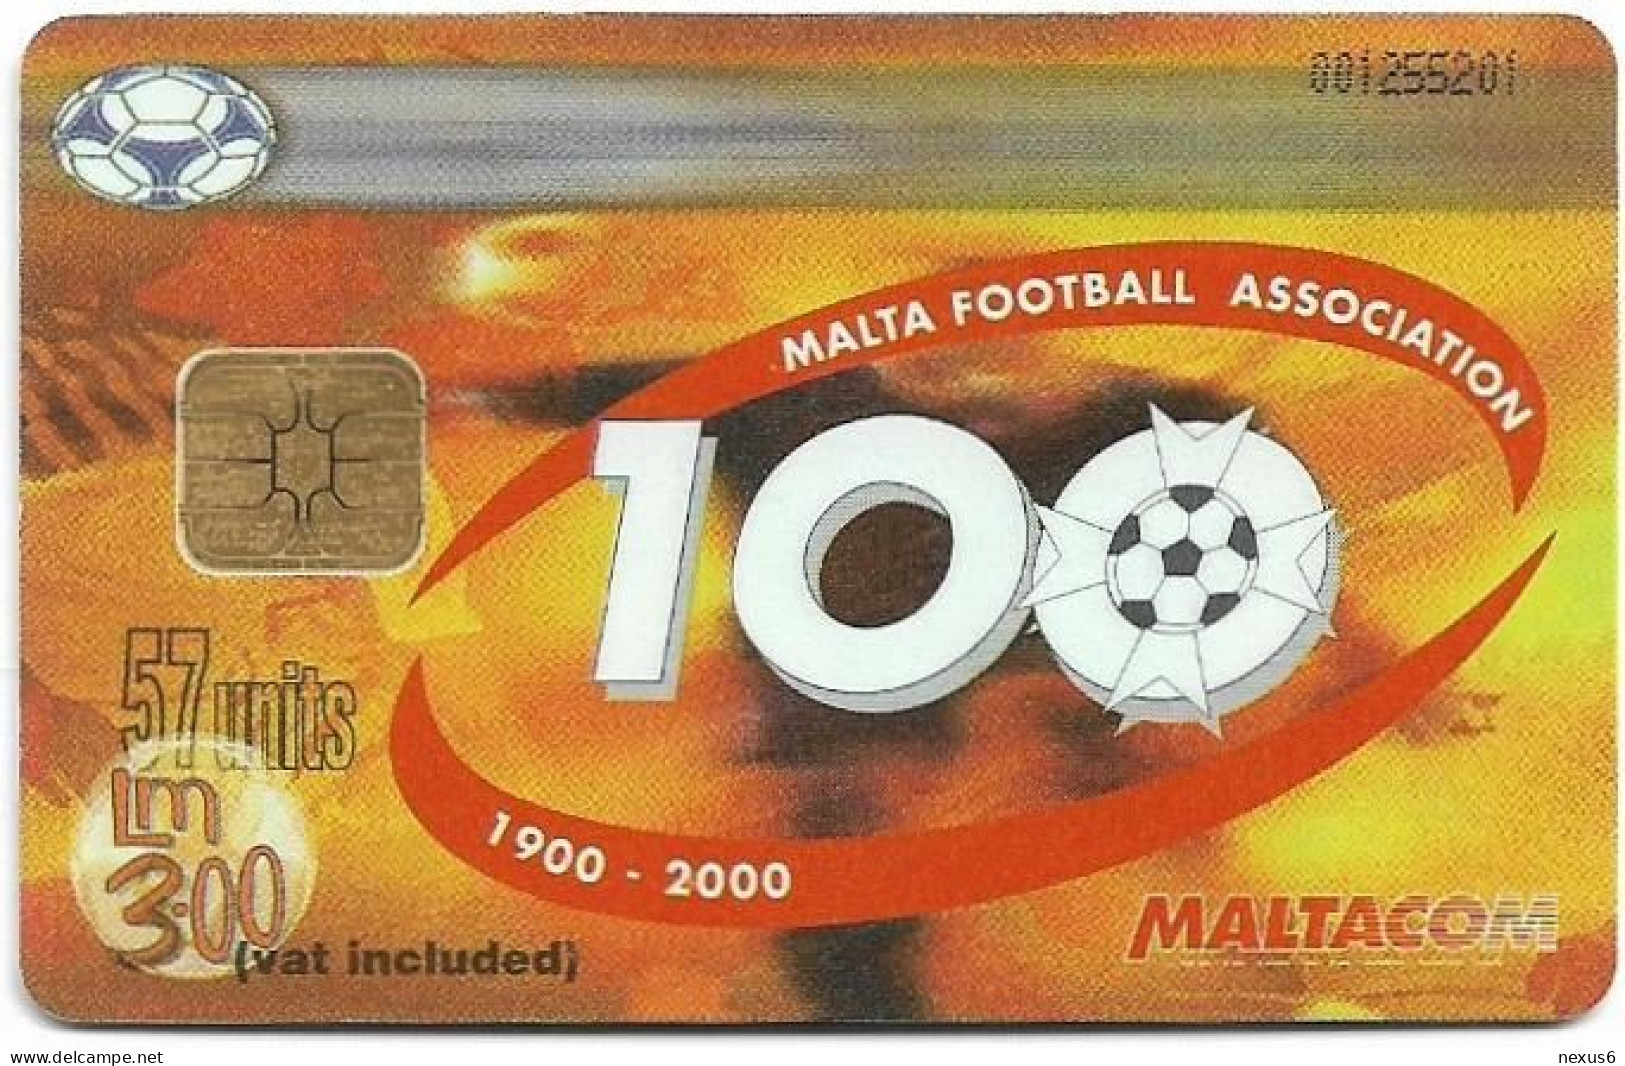 Malta - Maltacom - Malta Football Association 100 Years, 08.2000, 57U, 10.000ex, Used - Malte